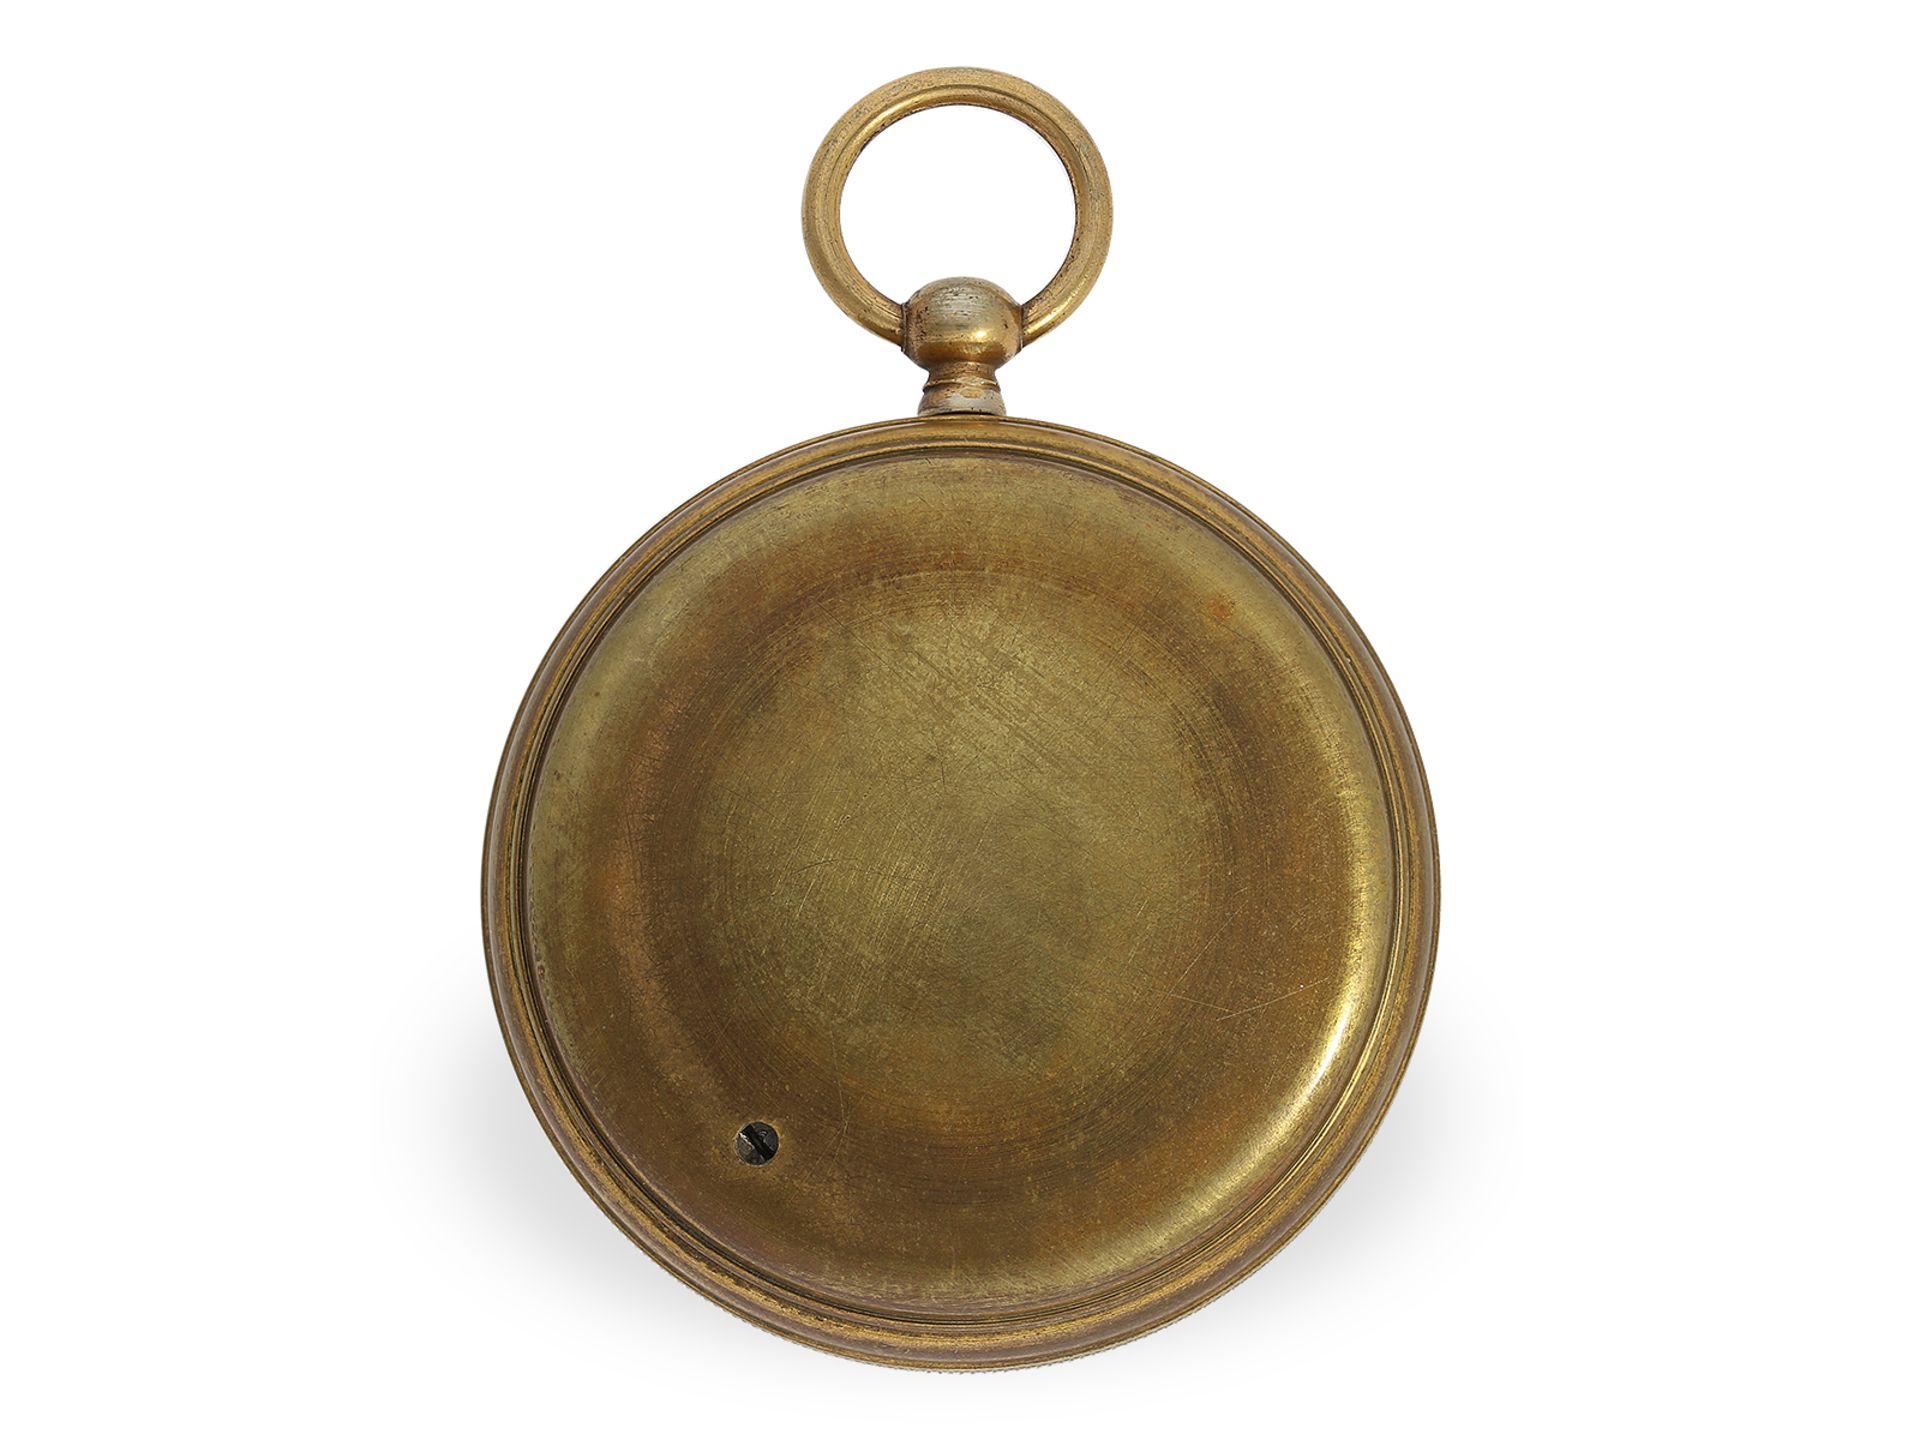 Rares Taschen-Barometer mit Originalbox, Breguet No.8996, ca.1850 - Bild 2 aus 3